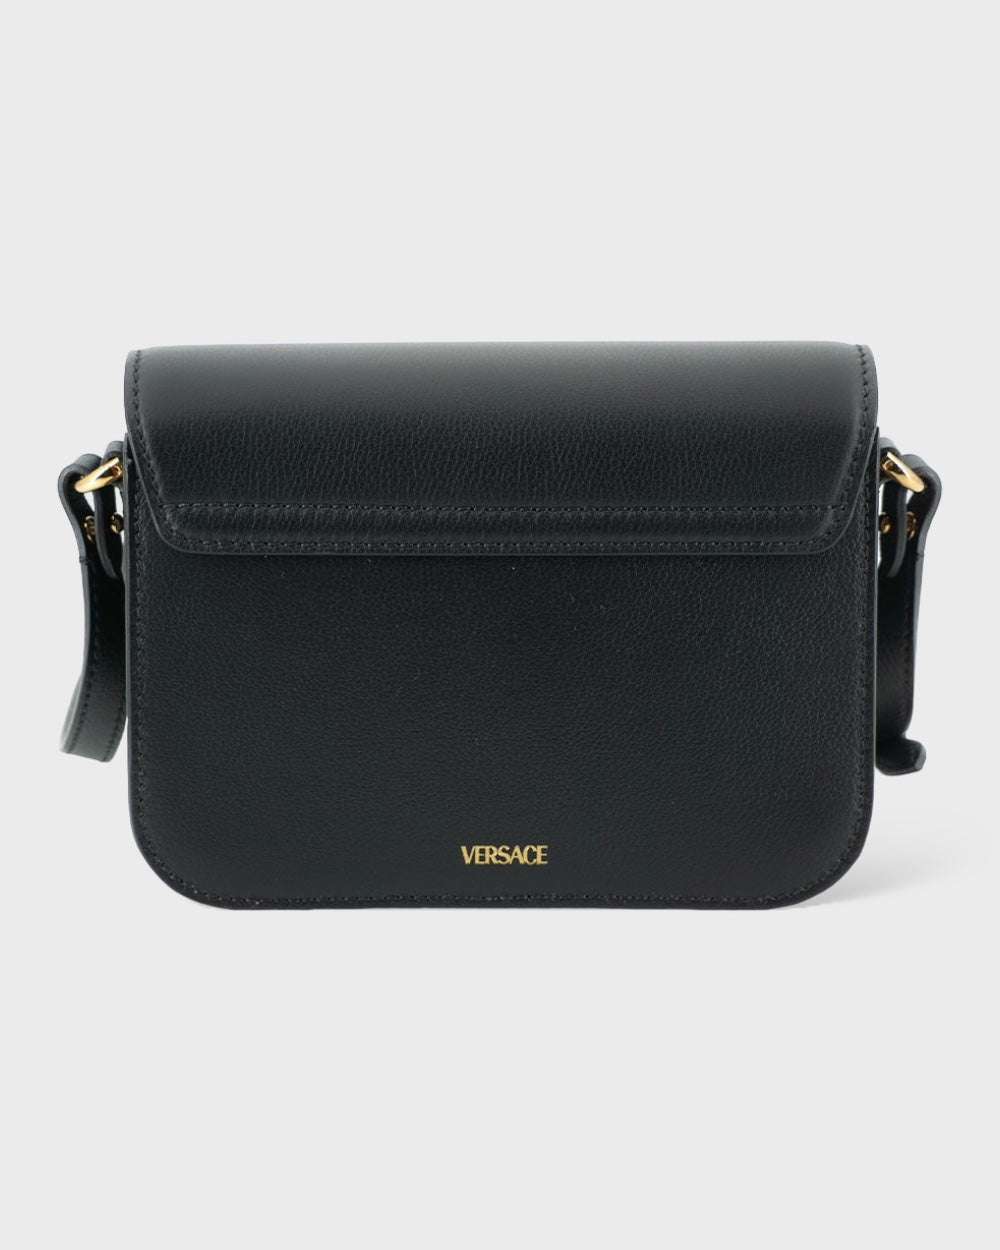 Versace Black Calf Leather Shoulder Bag